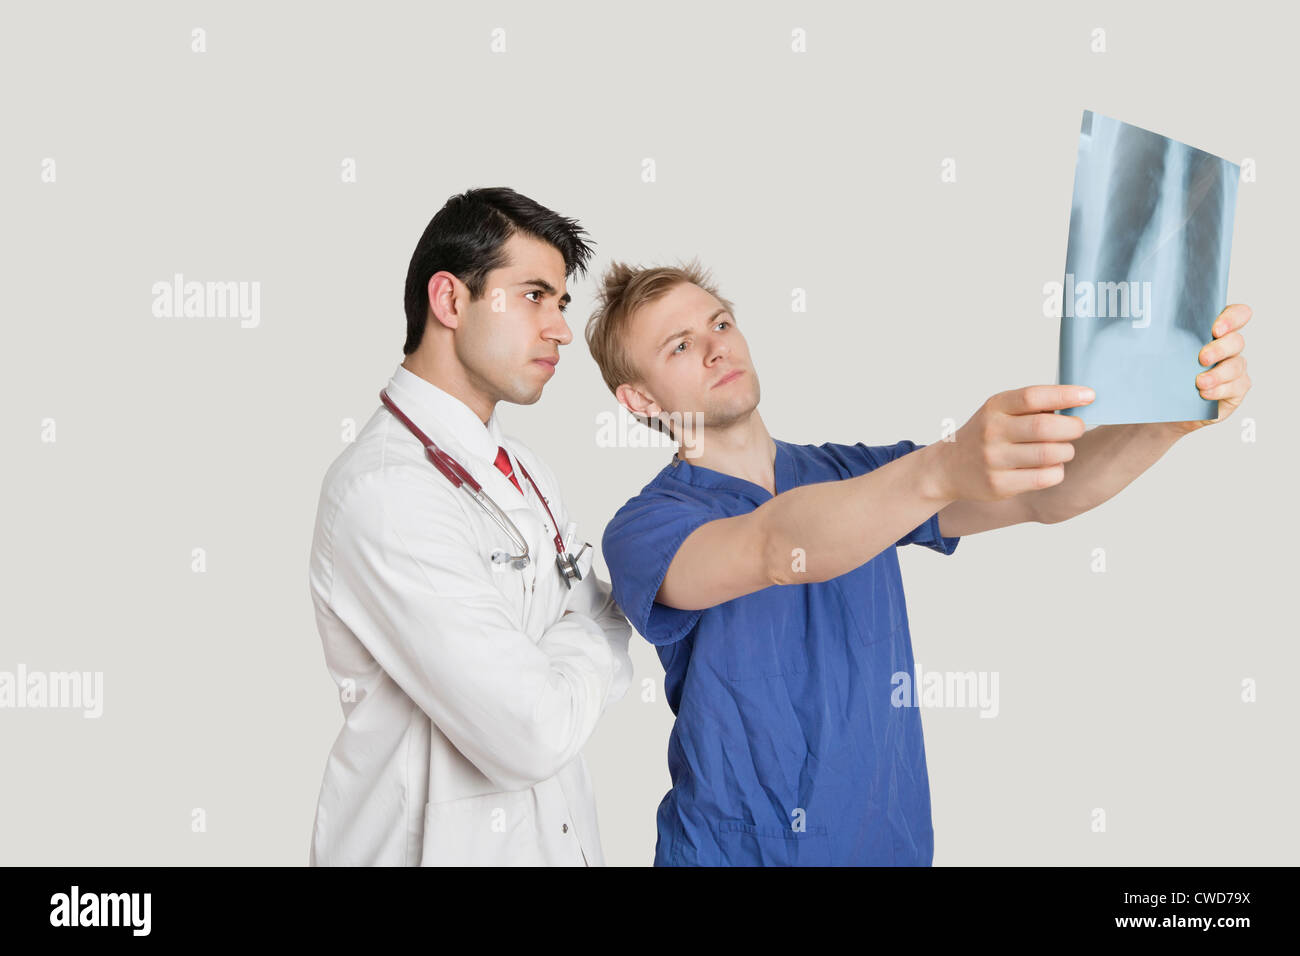 Mediziner, Röntgen-Thorax in hellgrauen Hintergrund betrachten Stockfoto